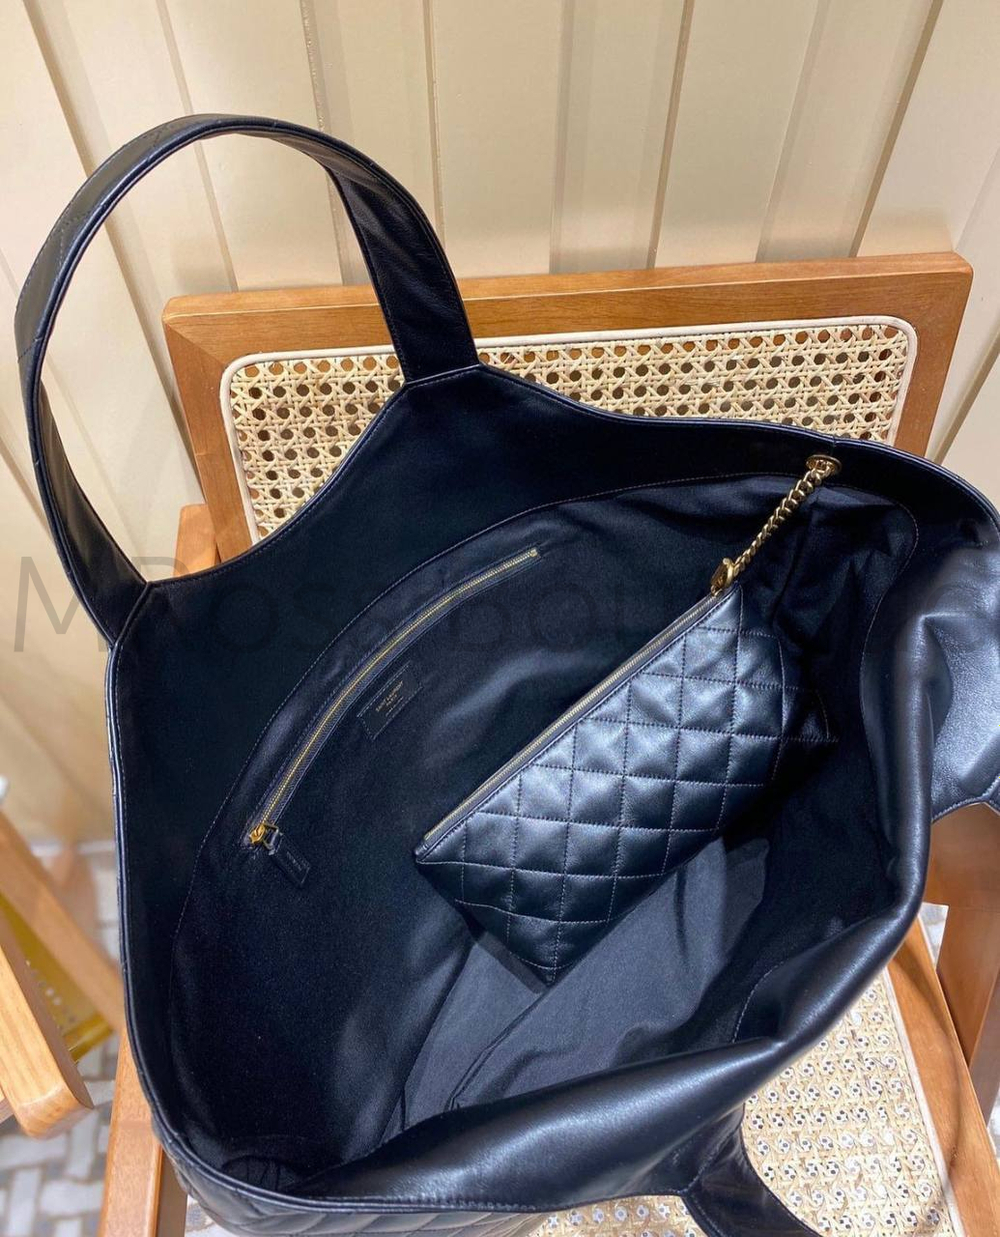 Хозяйственная сумка Ив Сен Лоран ICARE maxi shopping bag in quilted lambskin Saint Laurent